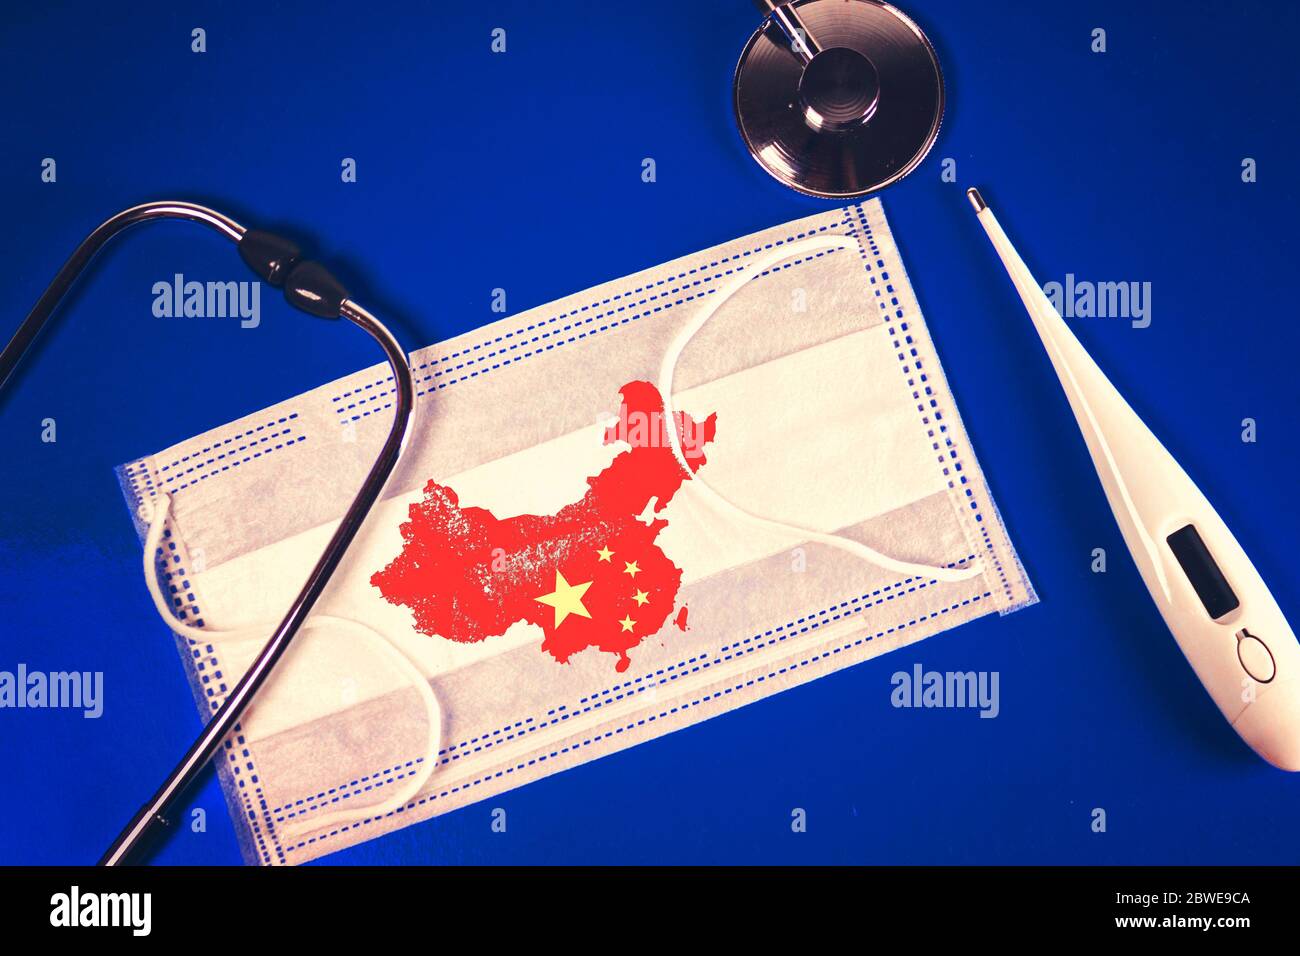 Stetoscopio, termometro e termometro maschera medica con la Repubblica popolare cinese mappa paese silhouette e un timbro: 2019-nCoV, su uno sfondo blu Foto Stock